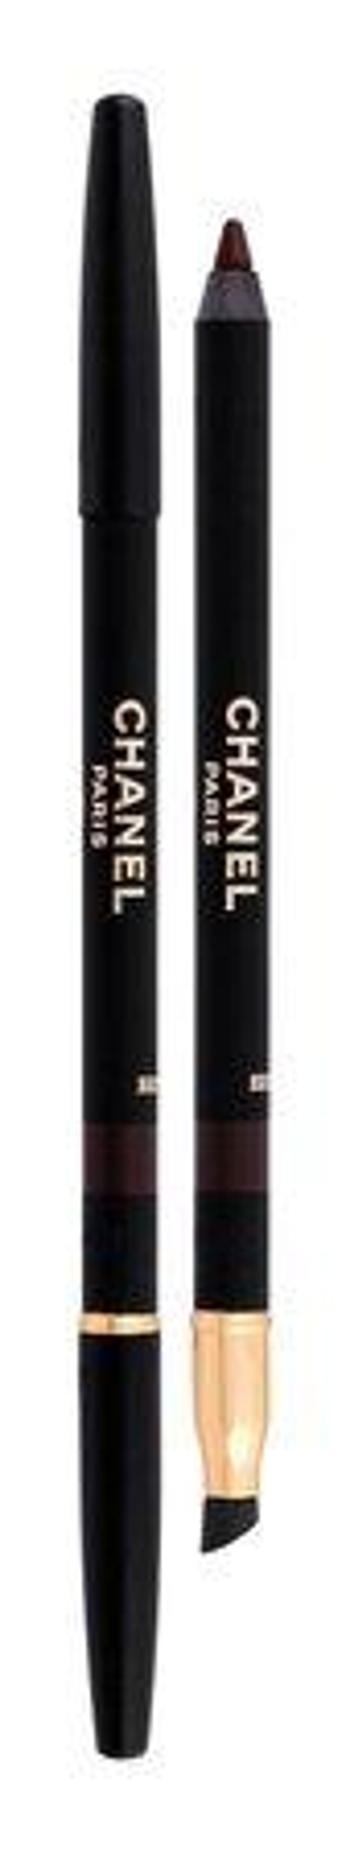 Chanel Tužka na oči s ořezávátkem Le Crayon Yeux (Precision Eye Definer) 1 g 02 Brun Teak, 1ml, Brun-Teak